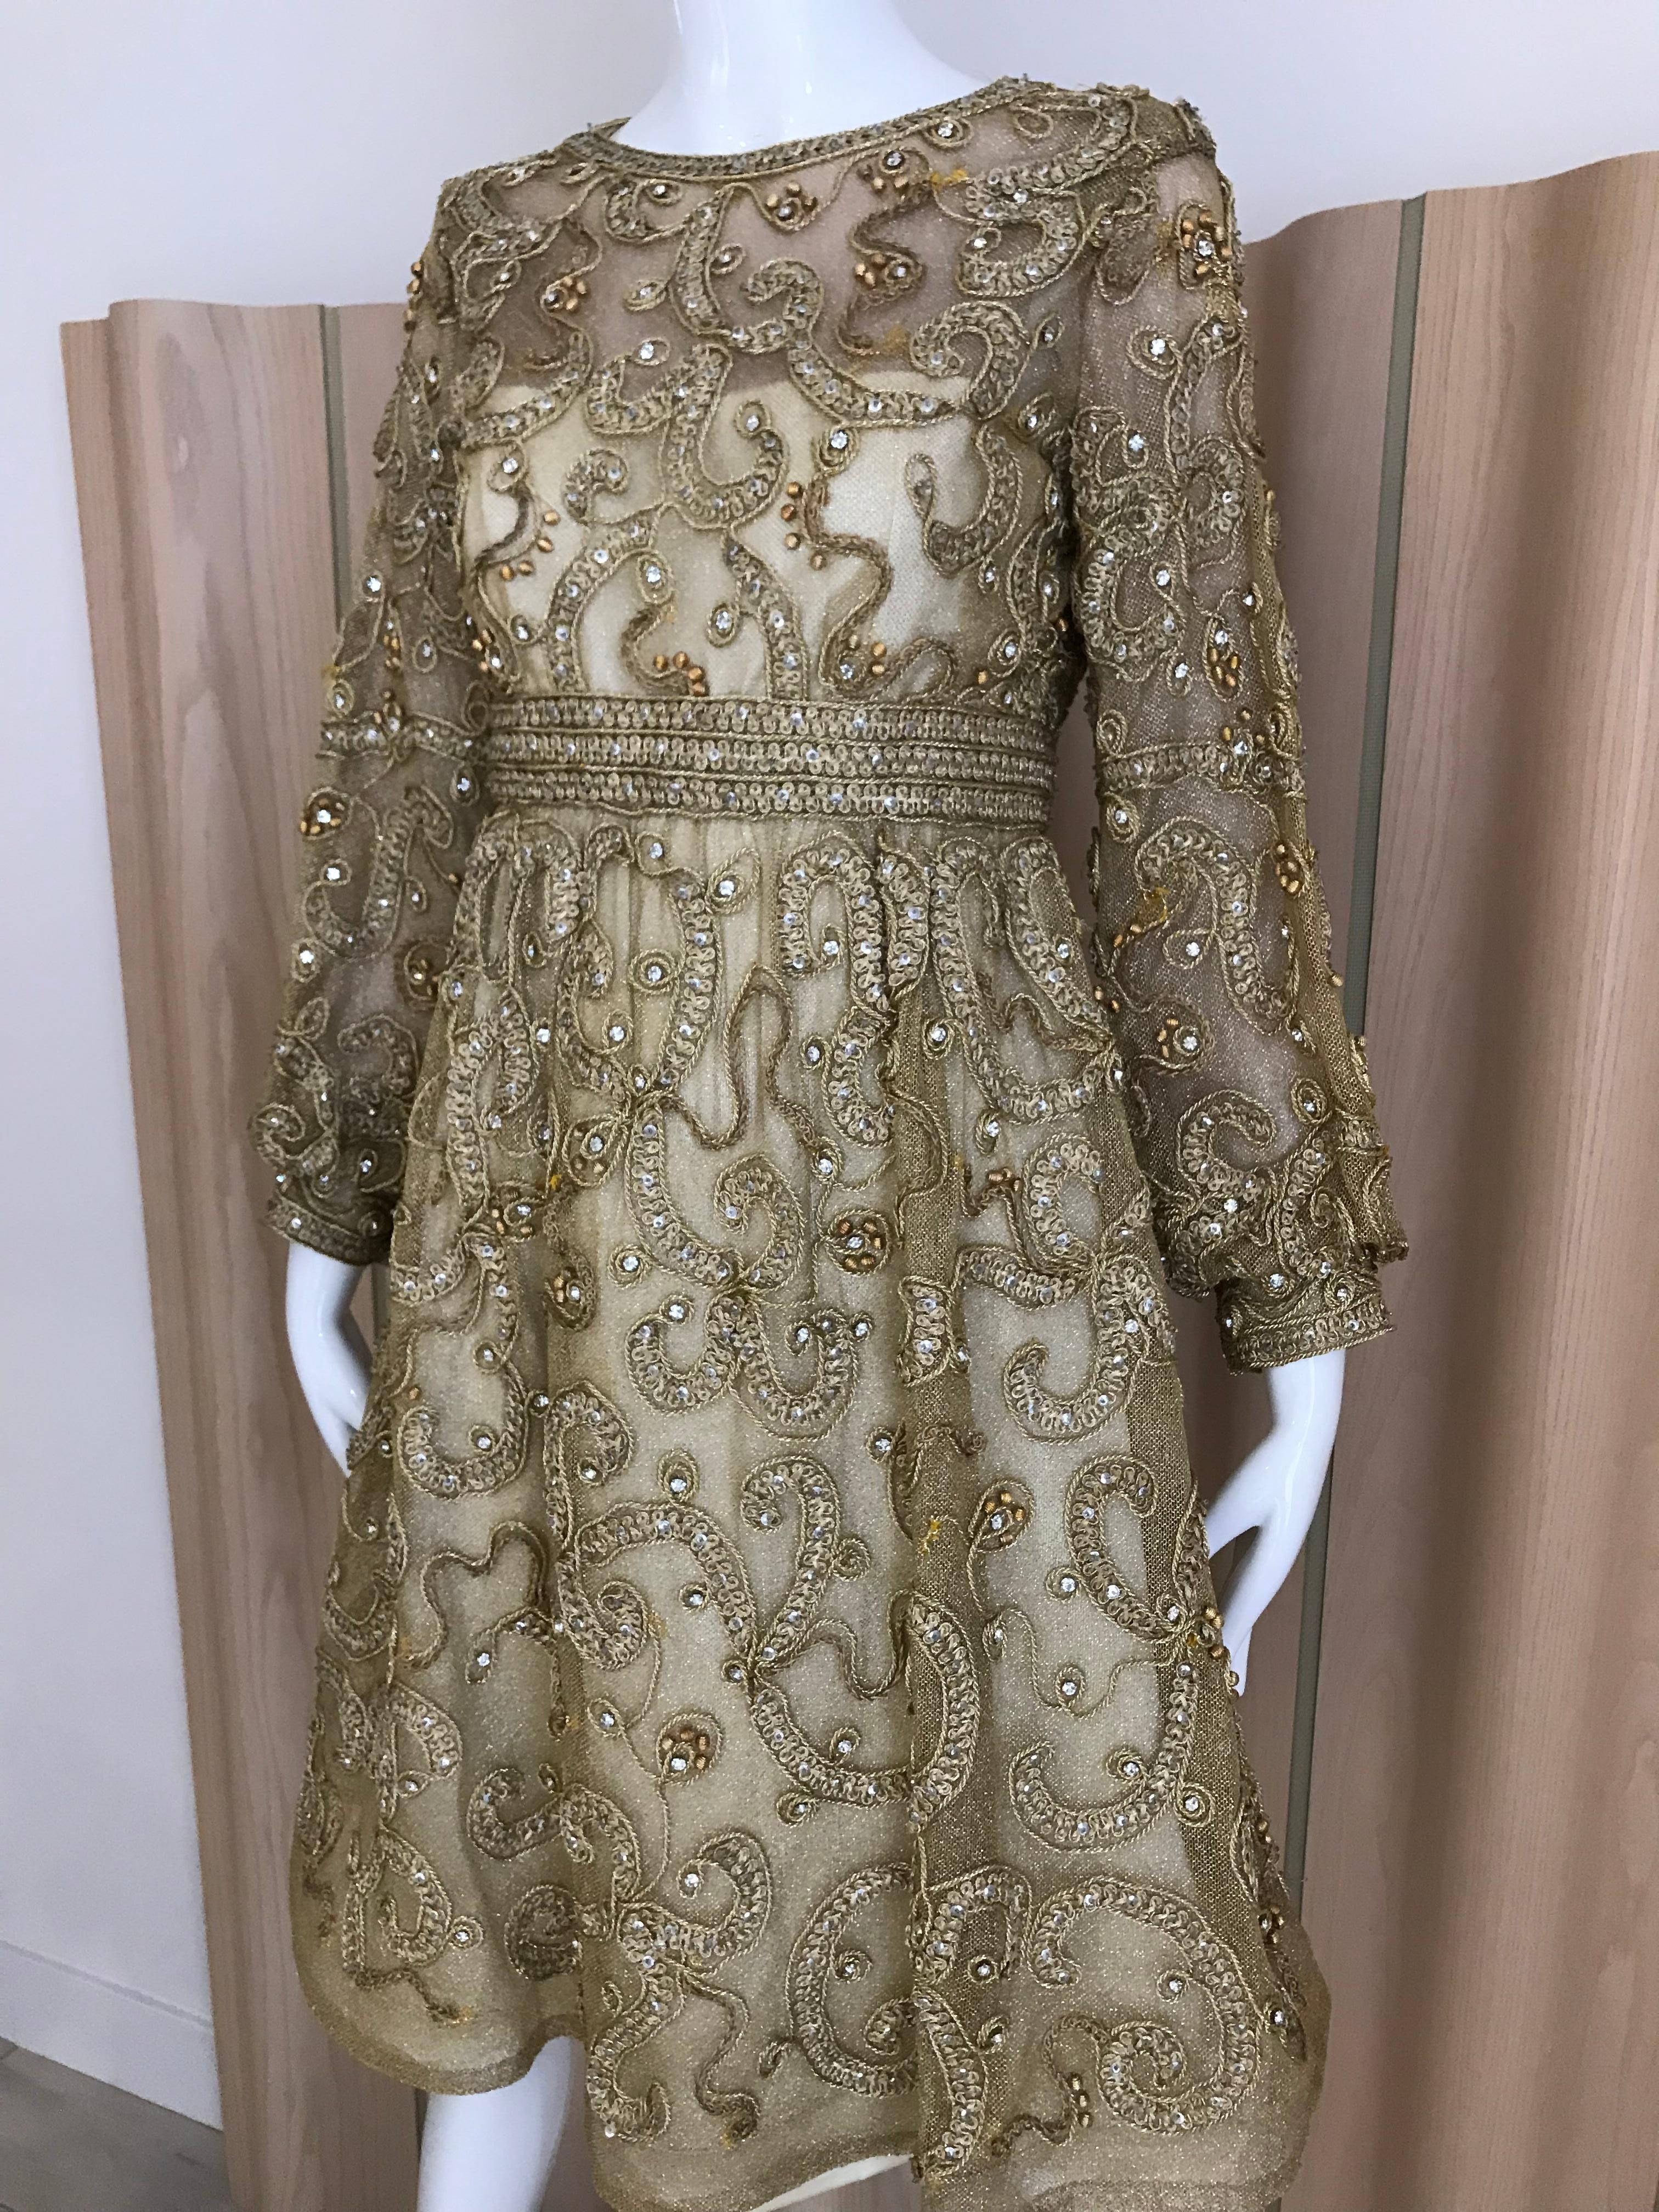 Vintage Malcolm Starr Kleid mit goldenem Netzüberzug, verziert mit geflochtenen goldenen Metallbändern und Strasssteinen. 
Das Kleid hat einen Rundhalsausschnitt, eine taillierte Passform, Dichterärmel mit gerafftem Bündchen, Pailletten und